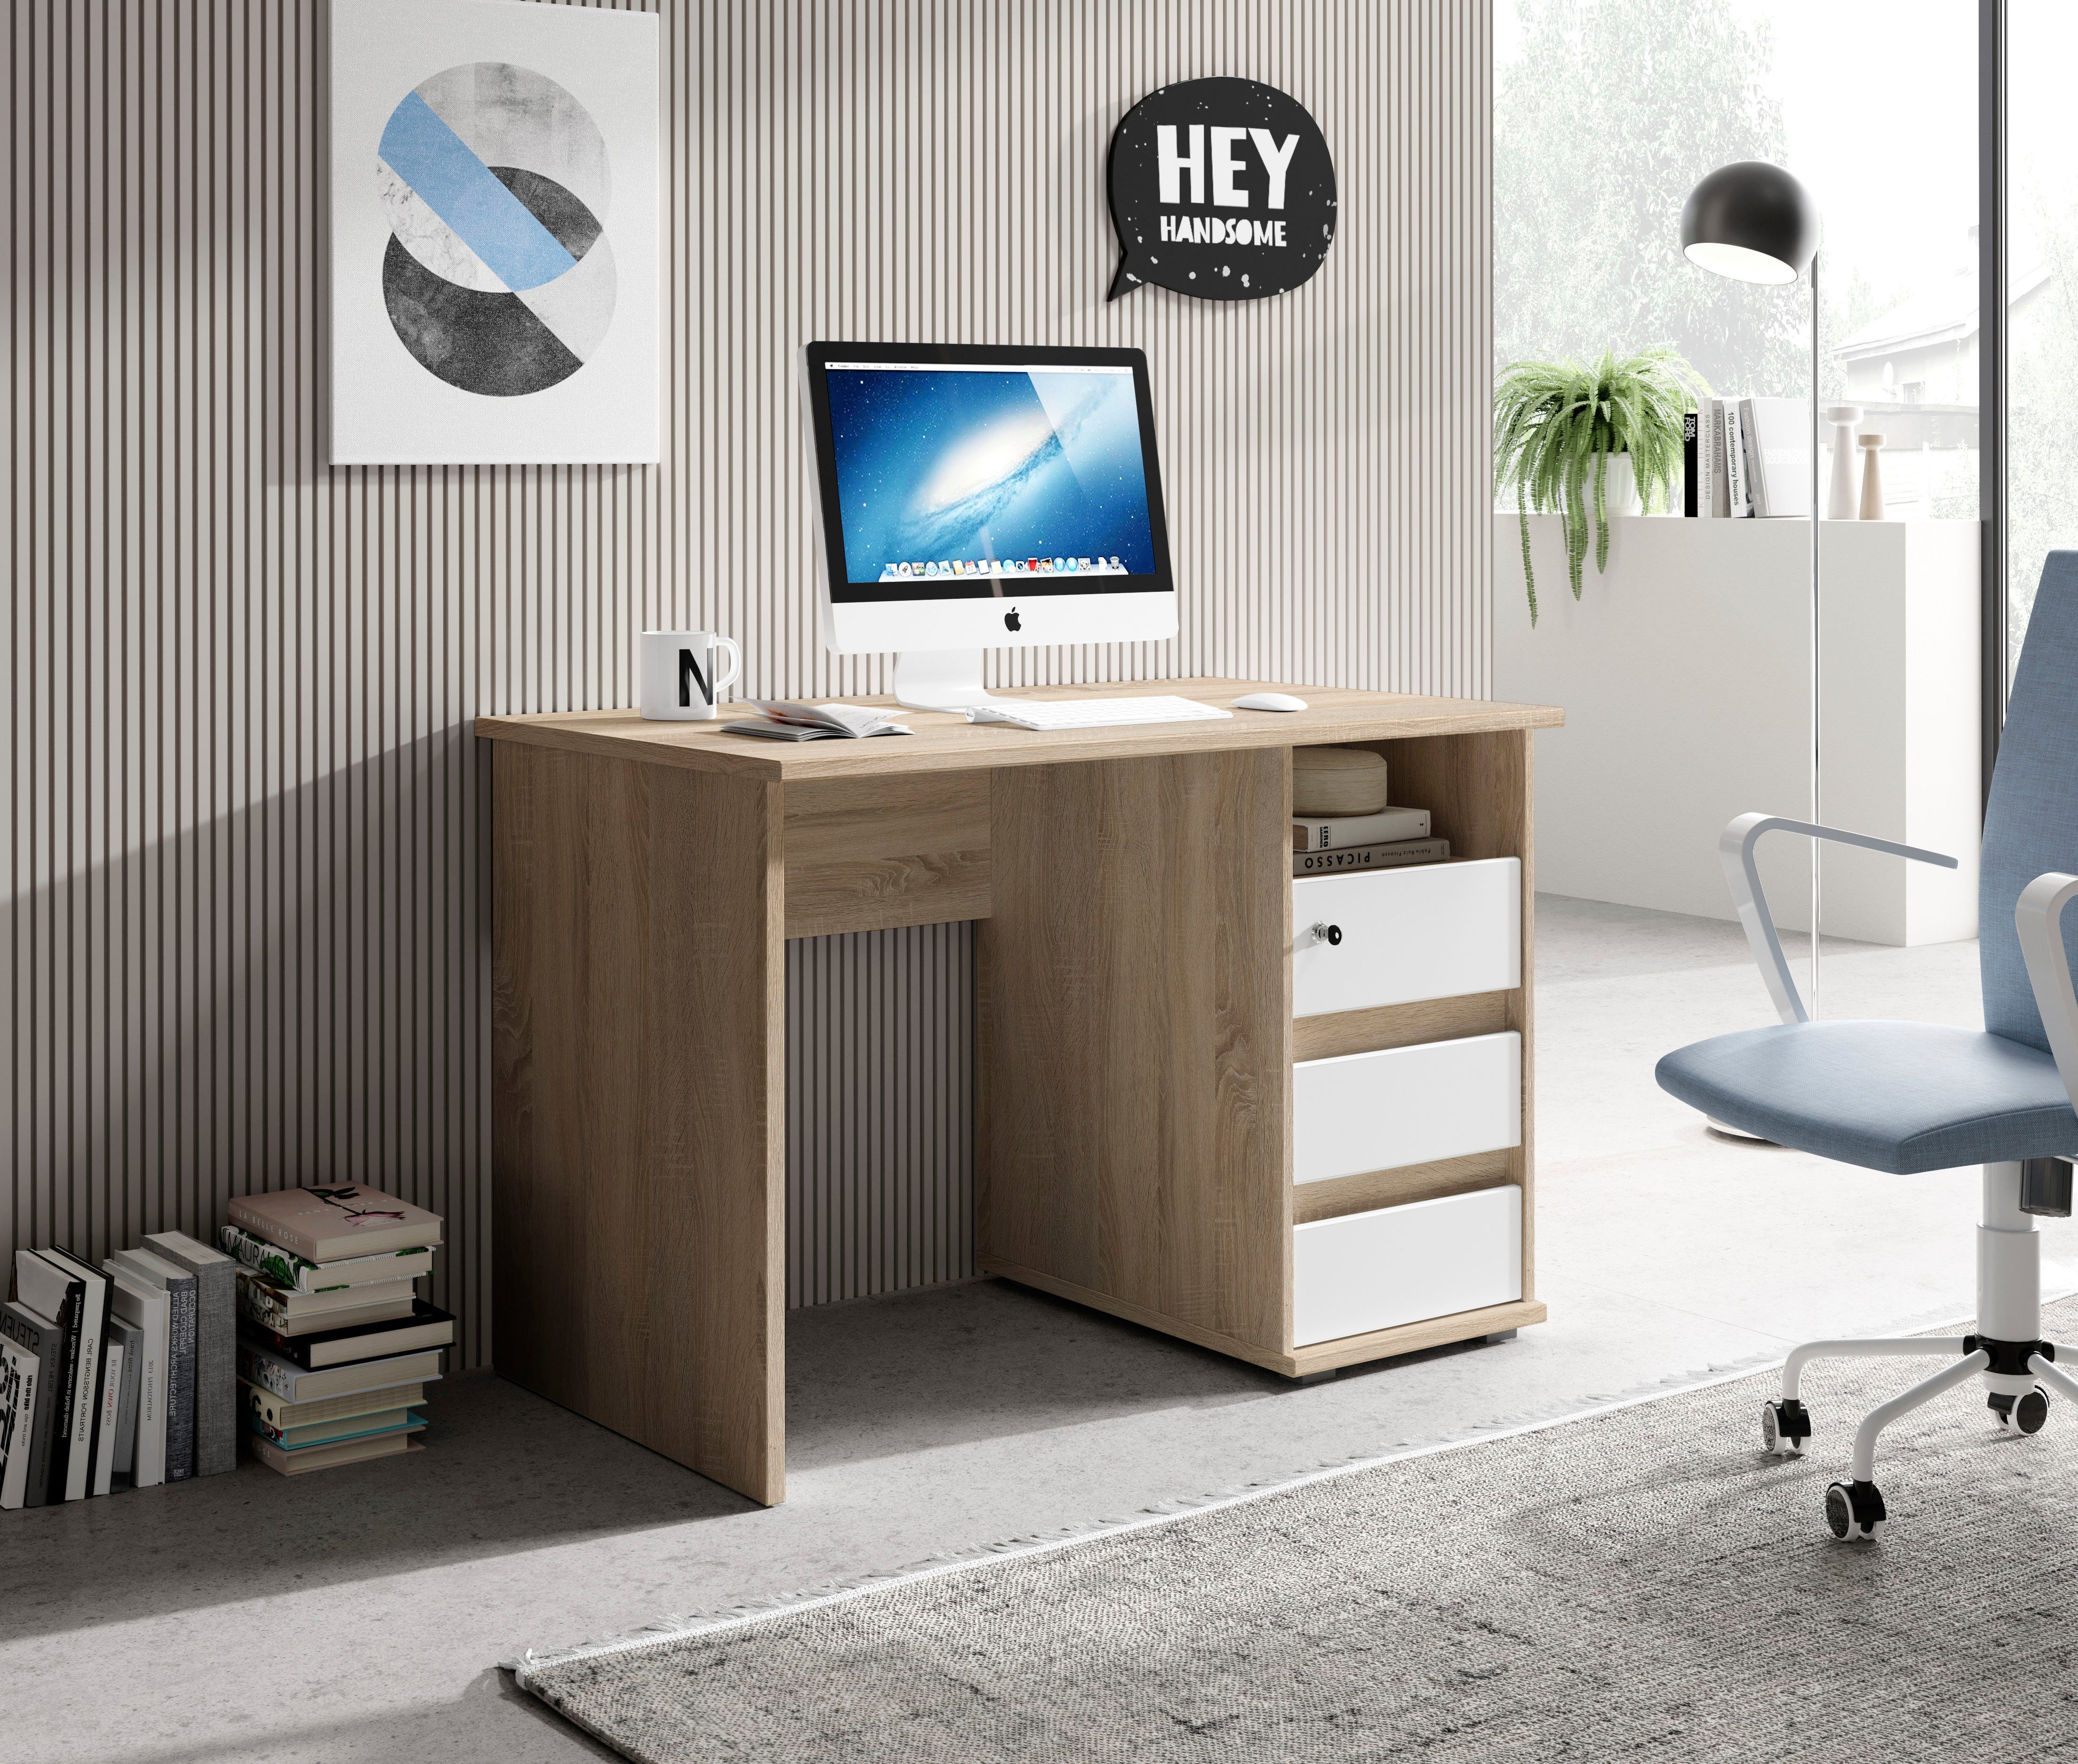 BEGA OFFICE Schreibtisch in sonoma/weiß Schubkasten abschließbar Primus eiche 3 Farbausführungen mit 1